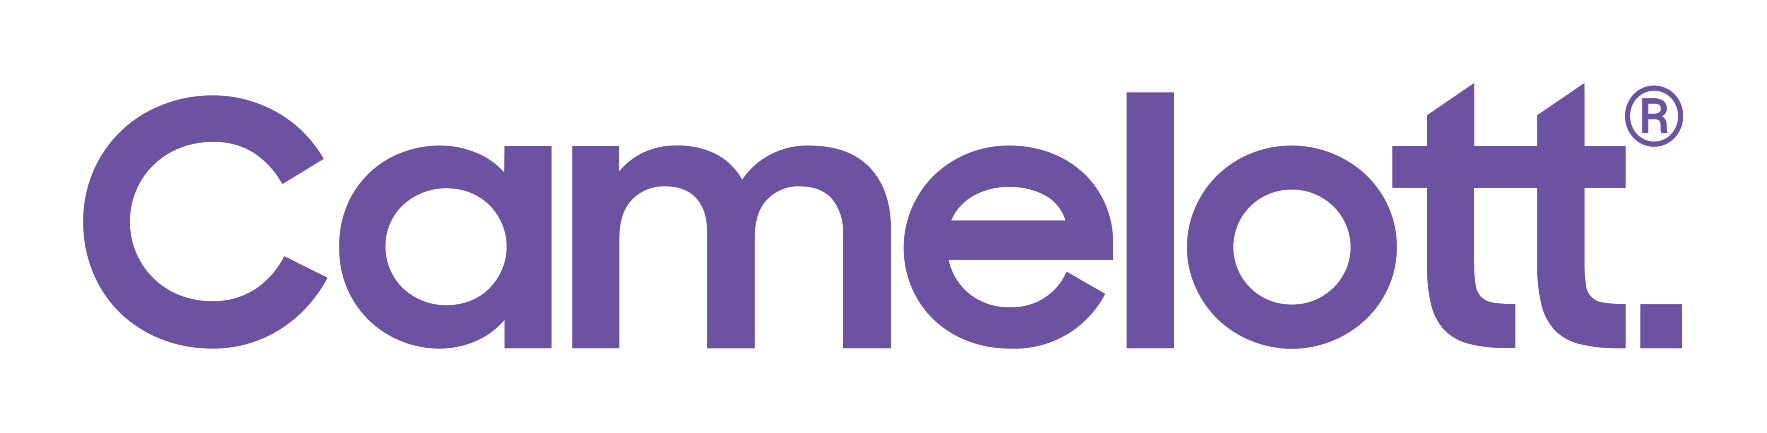 Camelott Digital Solutions logo